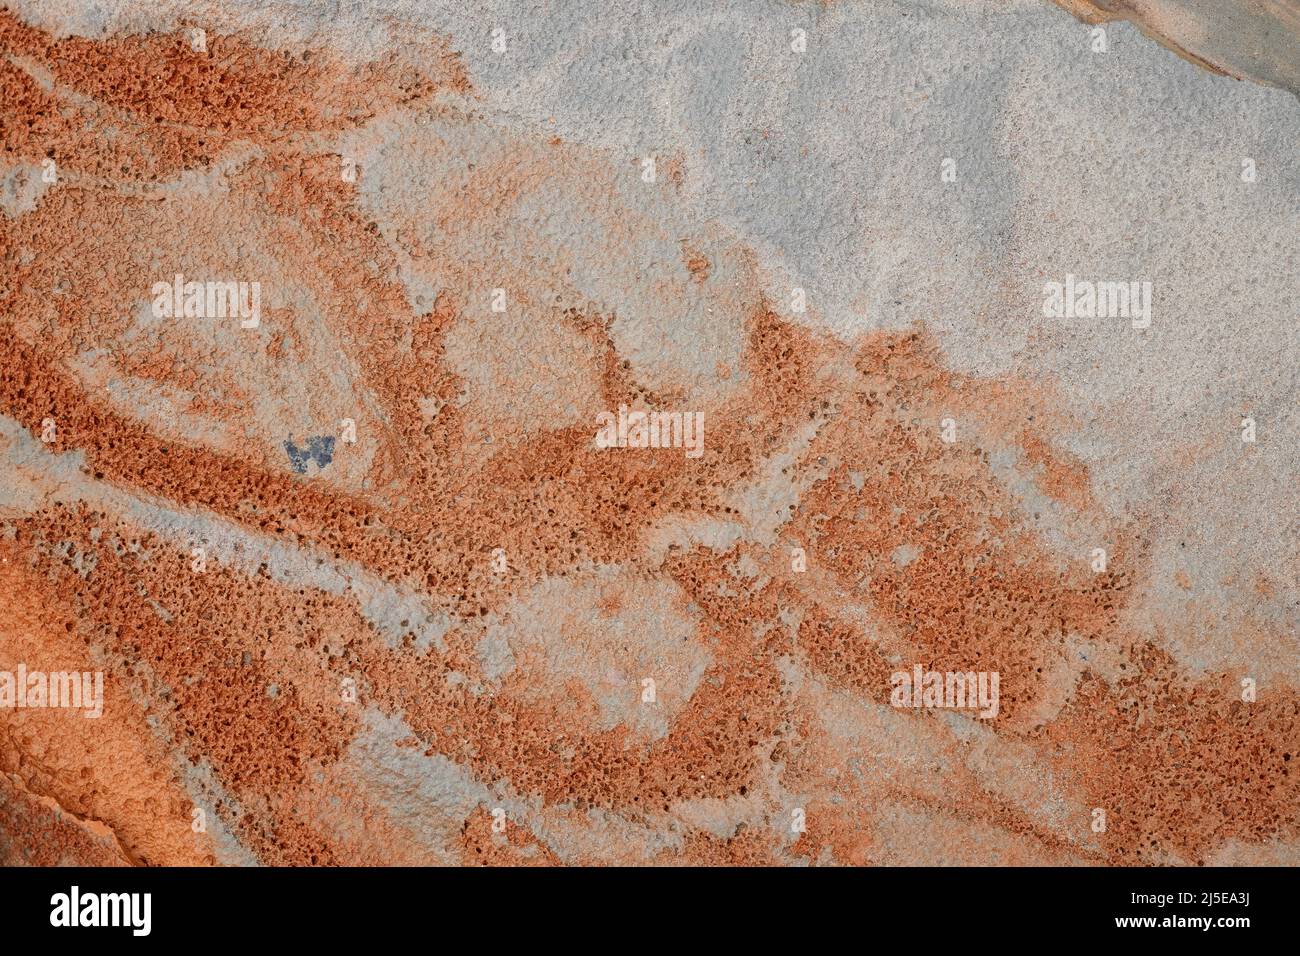 Hintergrund eines schmutzigen Sandbounds mit Schlamm und Löchern als Folge einer ökologischen Katastrophe Stockfoto